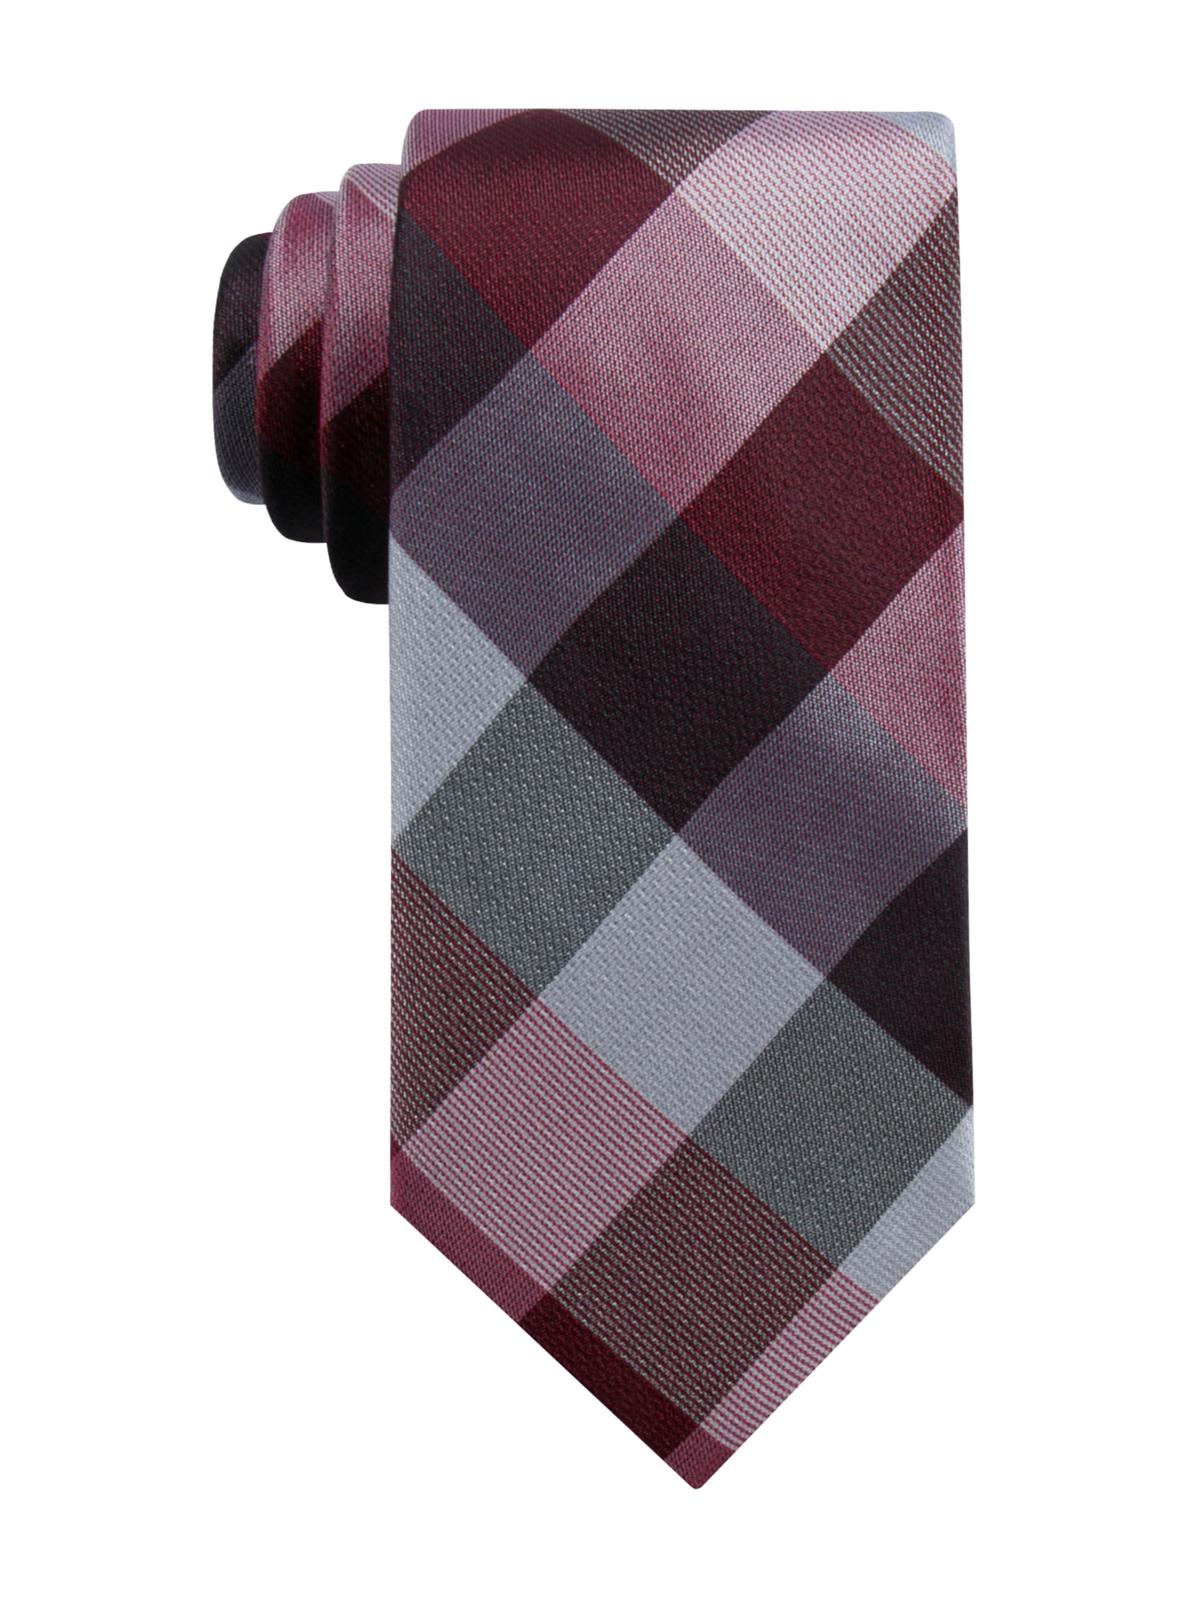 9758円 お買得 Ryan Seacrest アクセサリー ネクタイ Mens Lurex Plaid Self-tied Necktie Red One Size